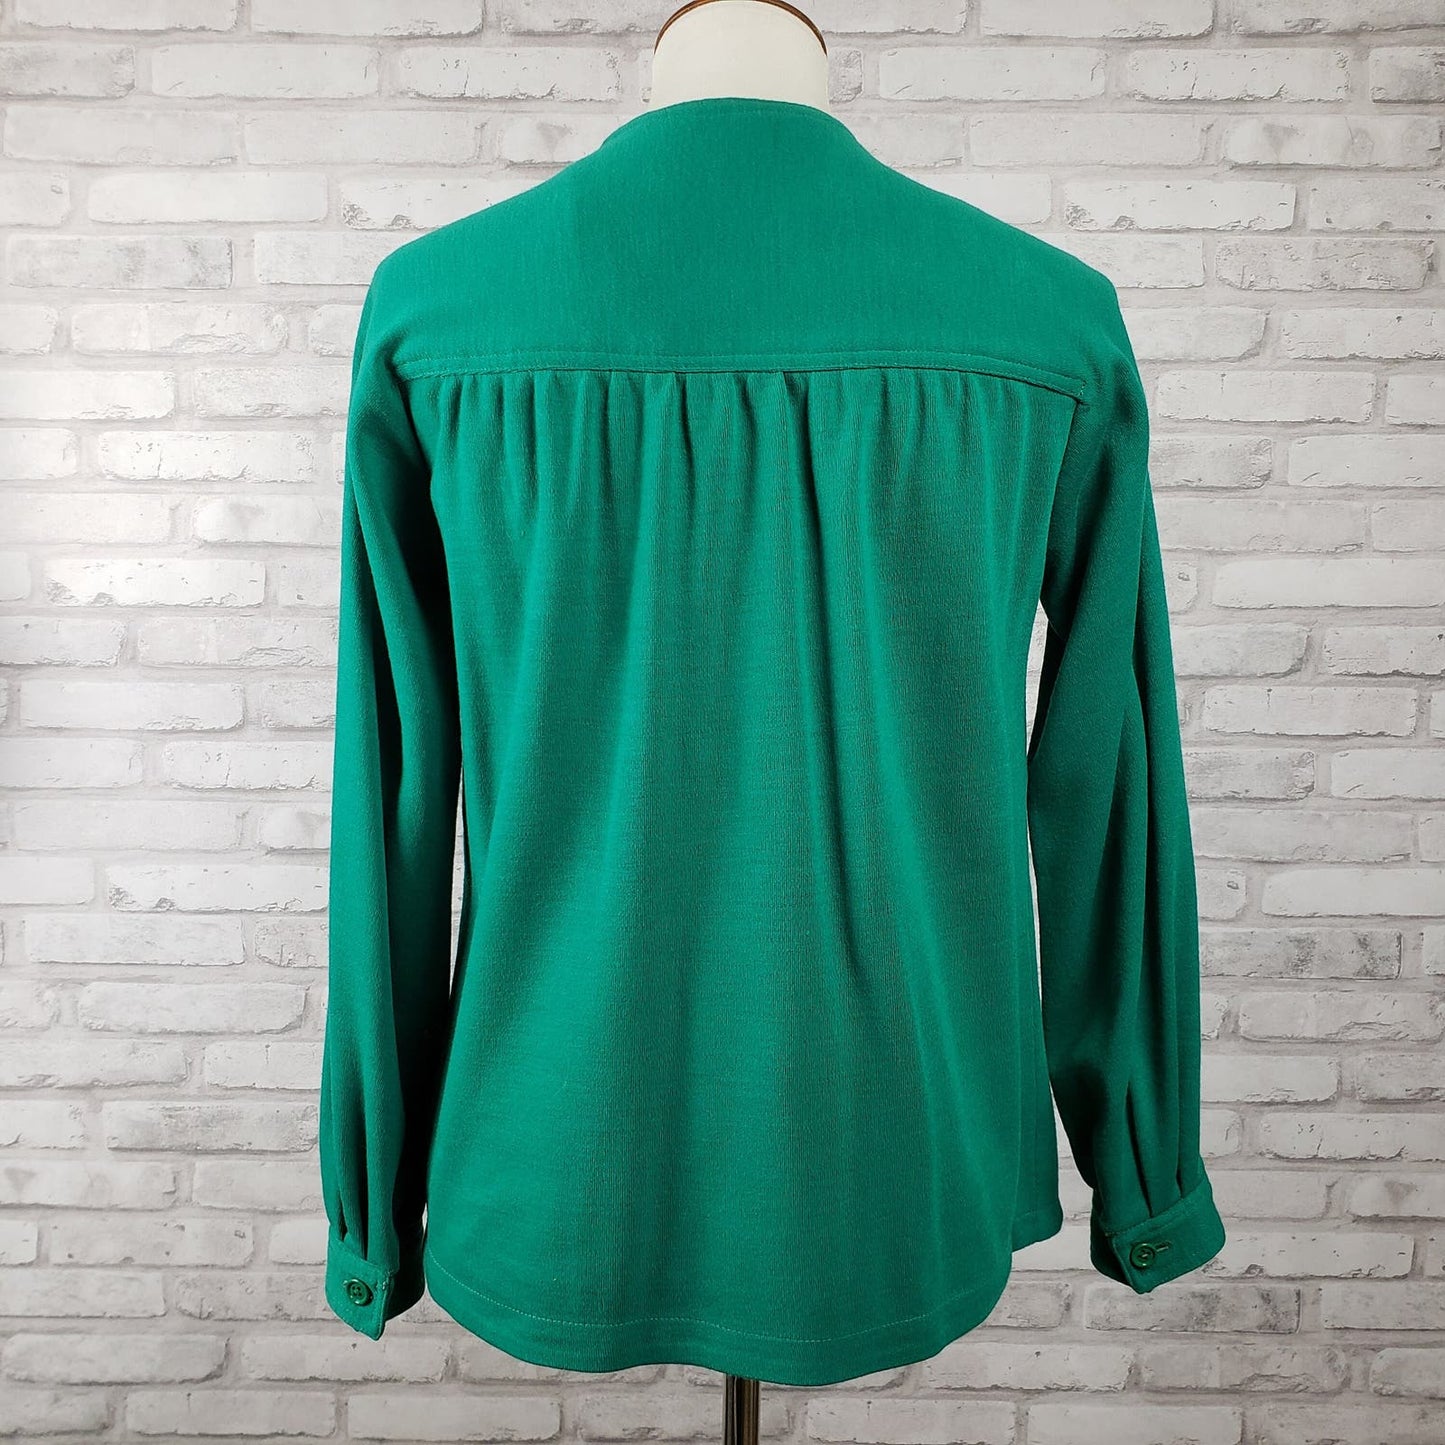 Swing jacket or shacket emerald green wool blend jersey knit, 38-inch bust Joan Leslie for Kasper 1970s